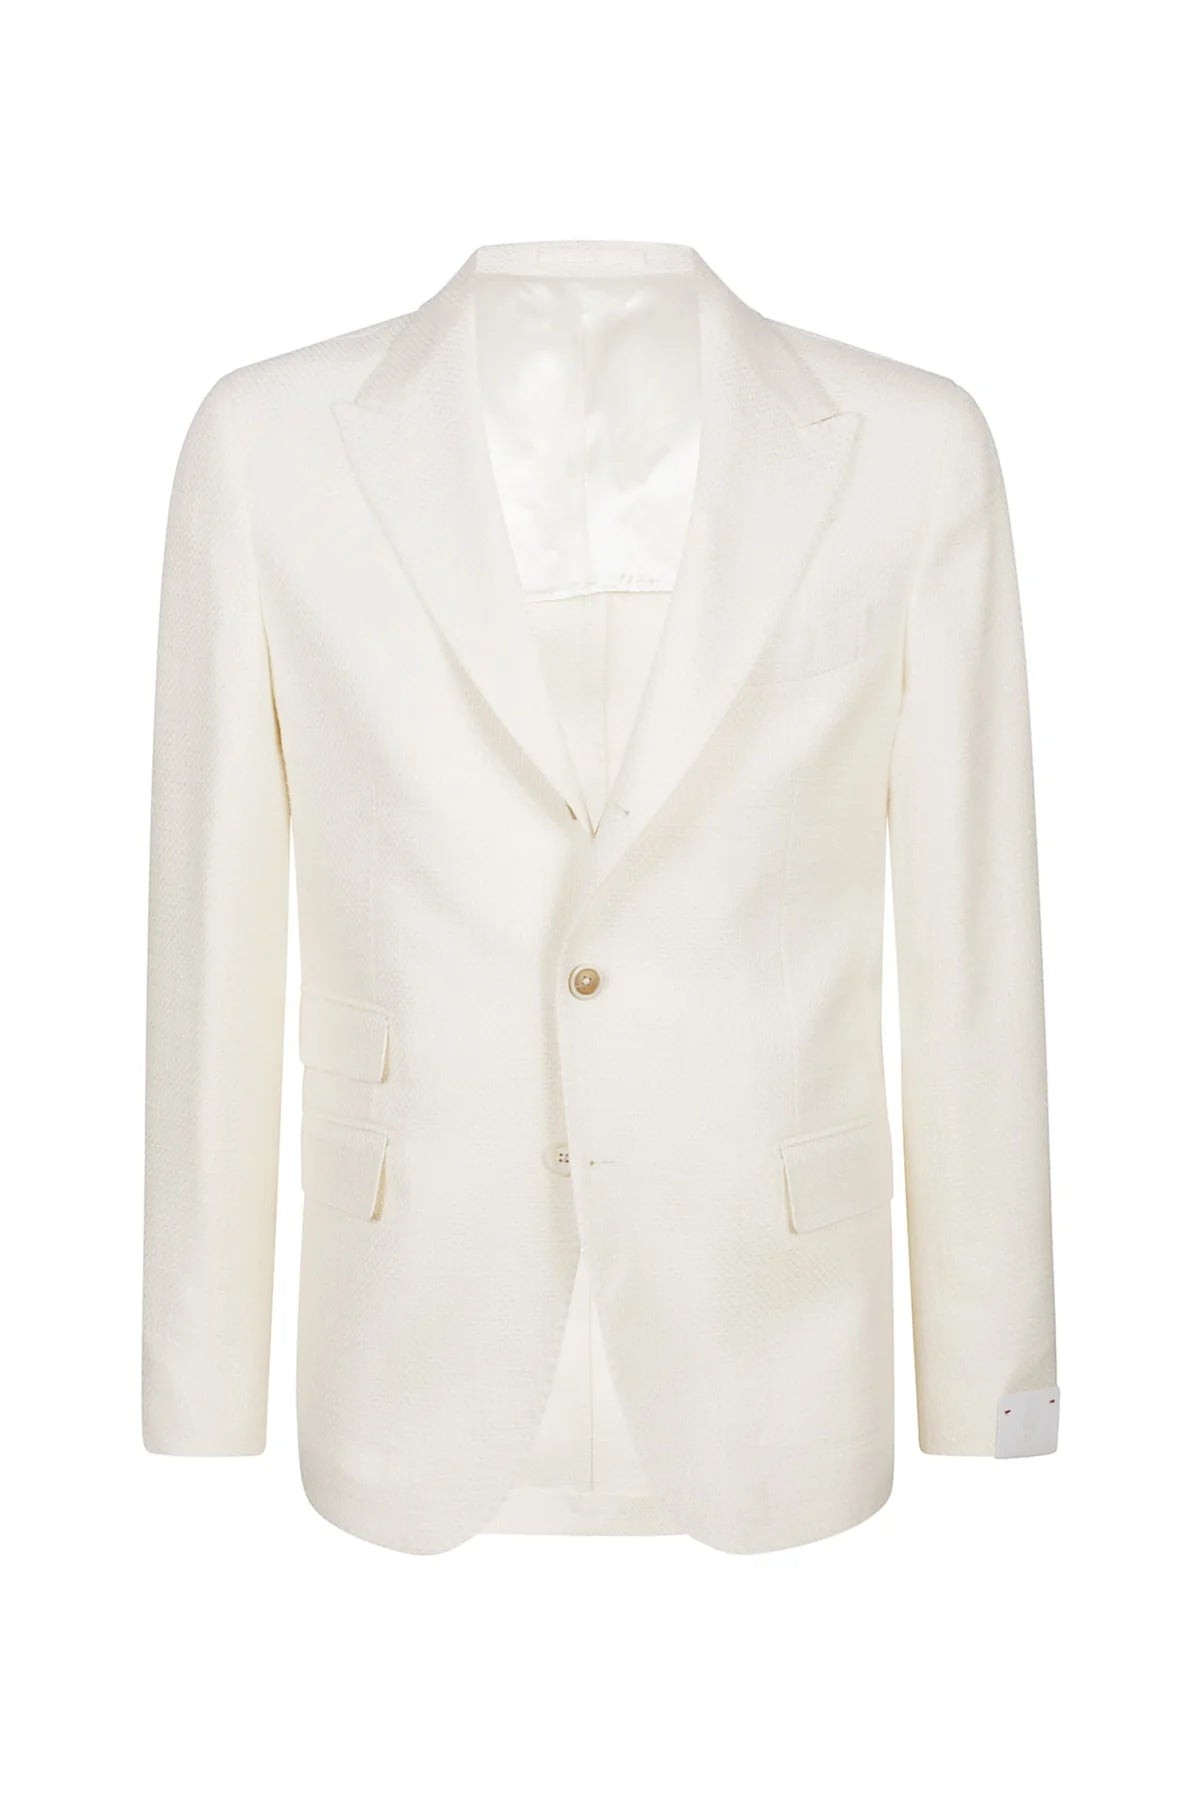 ELEVENTY Linen Jacket White